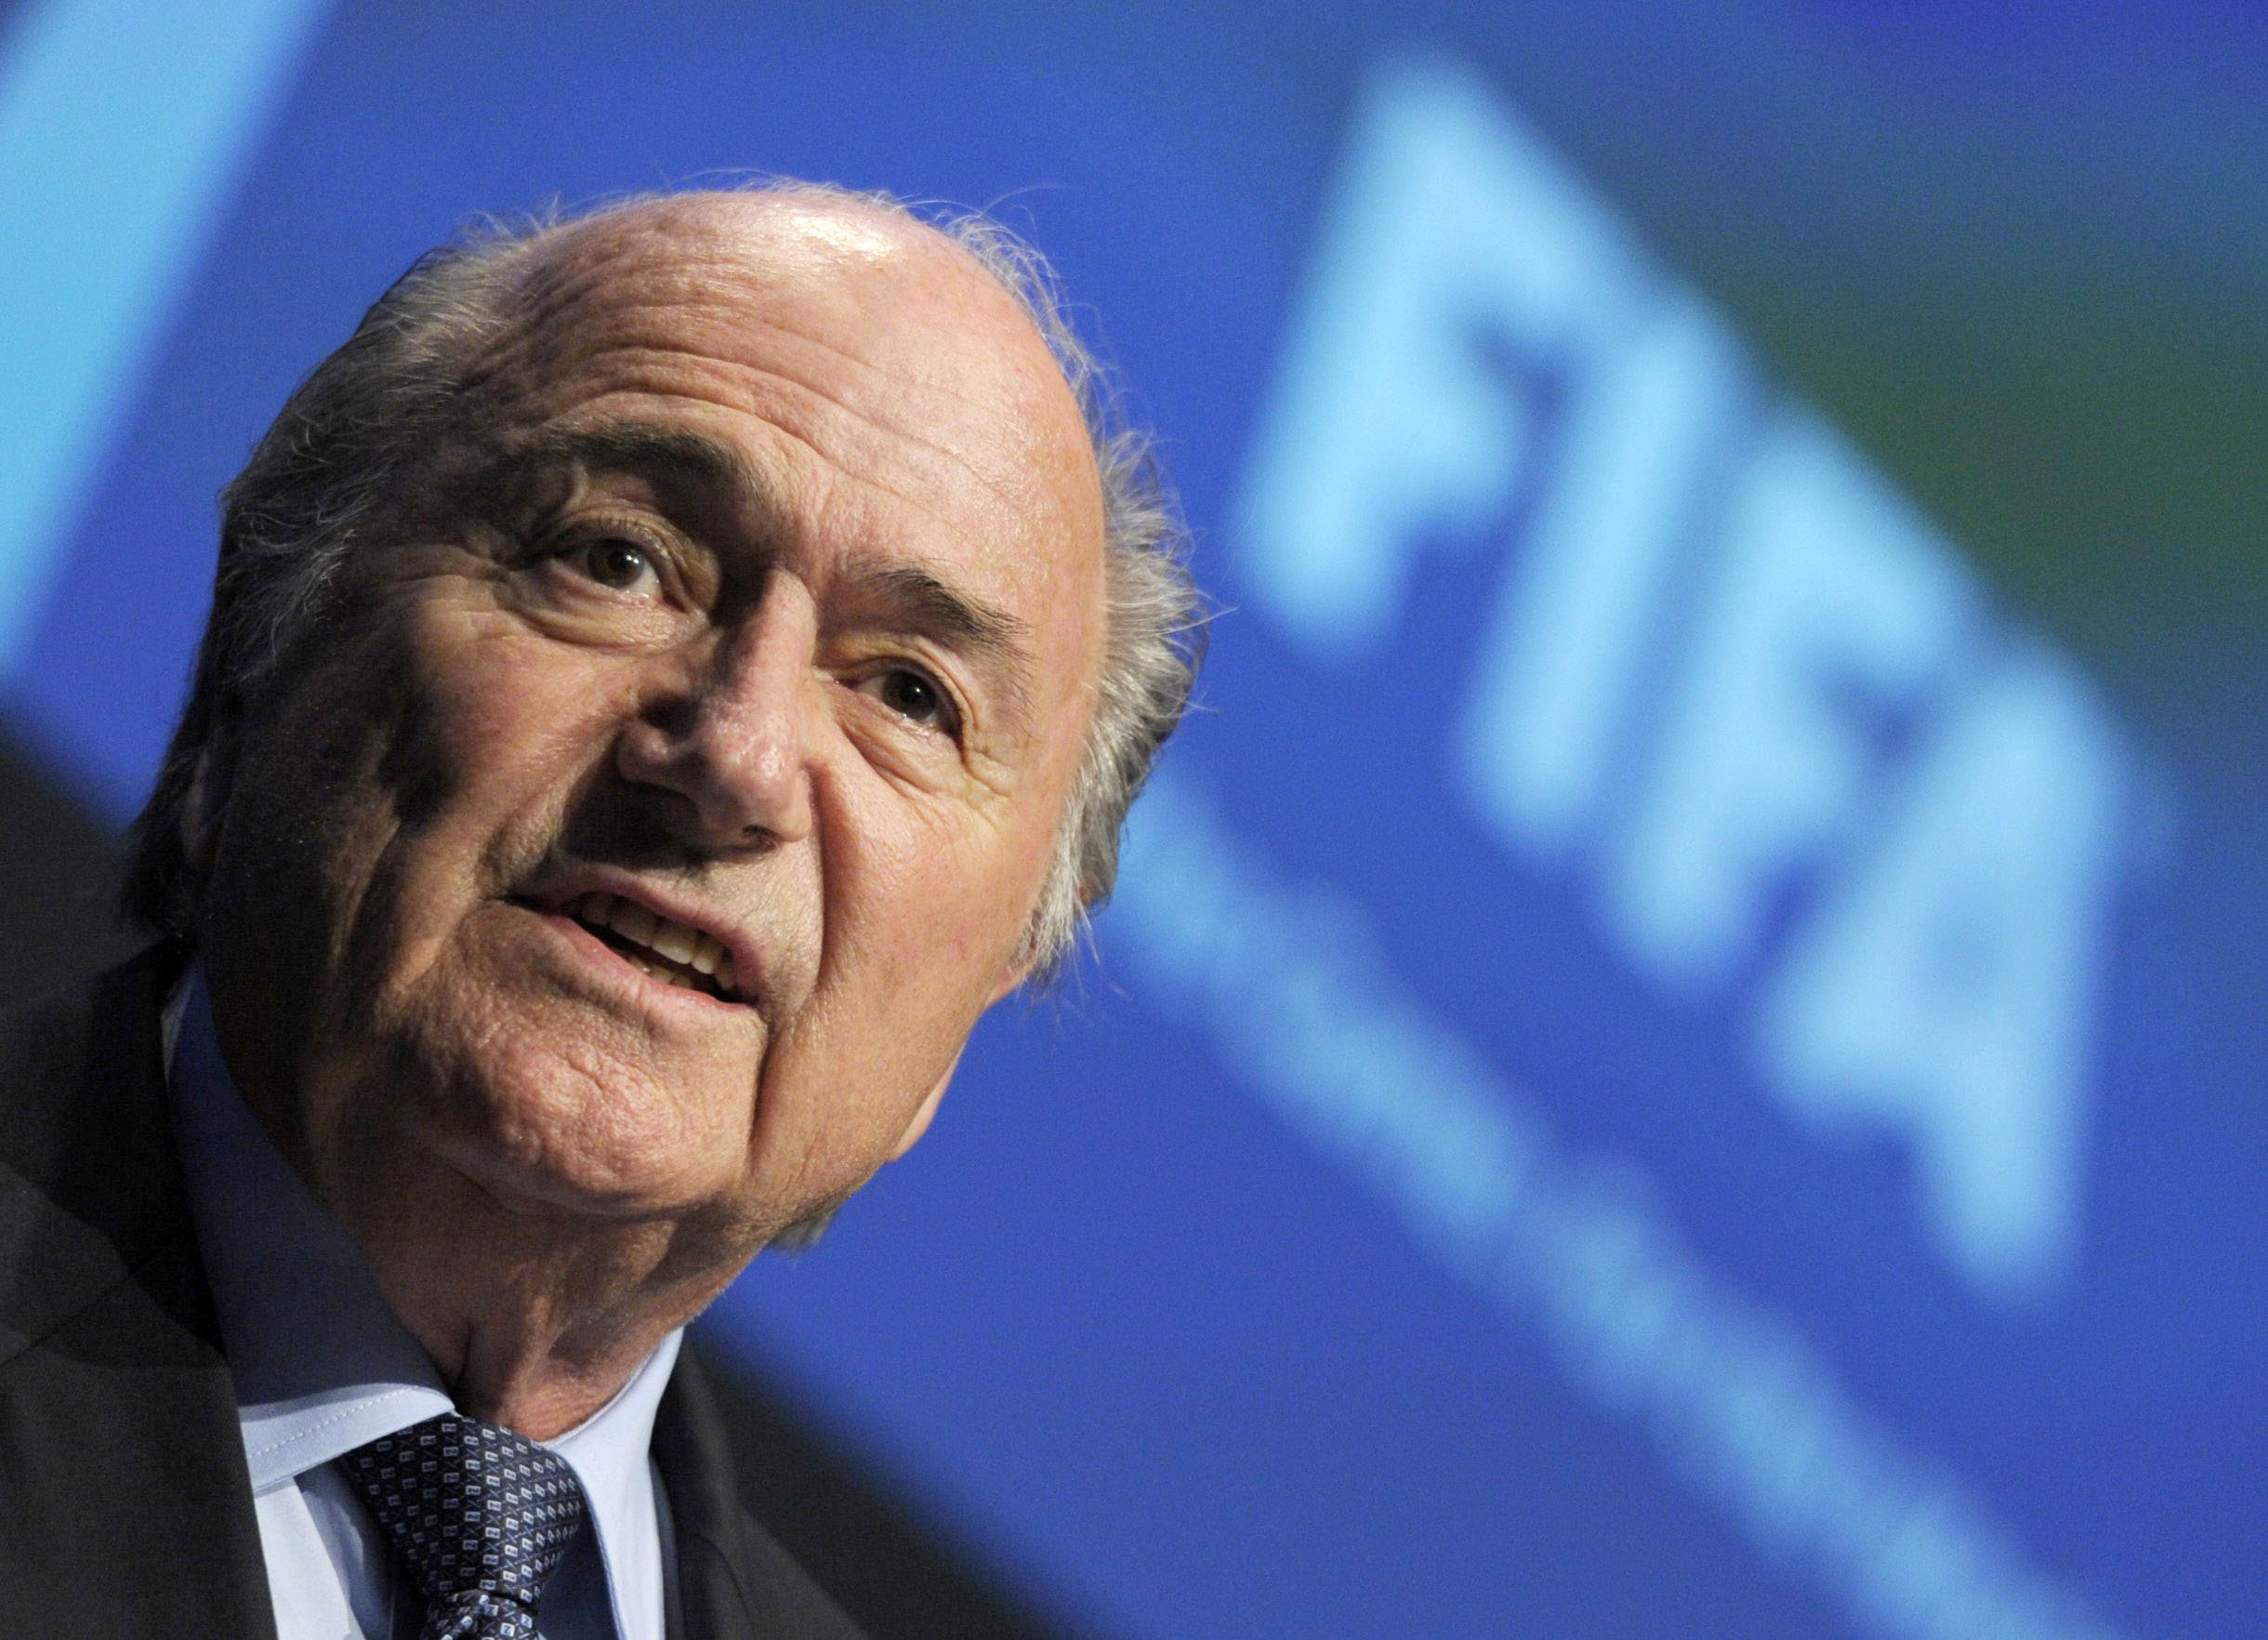 Presidentvalet, fifa, Mohamed bin Hammam, Sepp Blatter, Fotboll